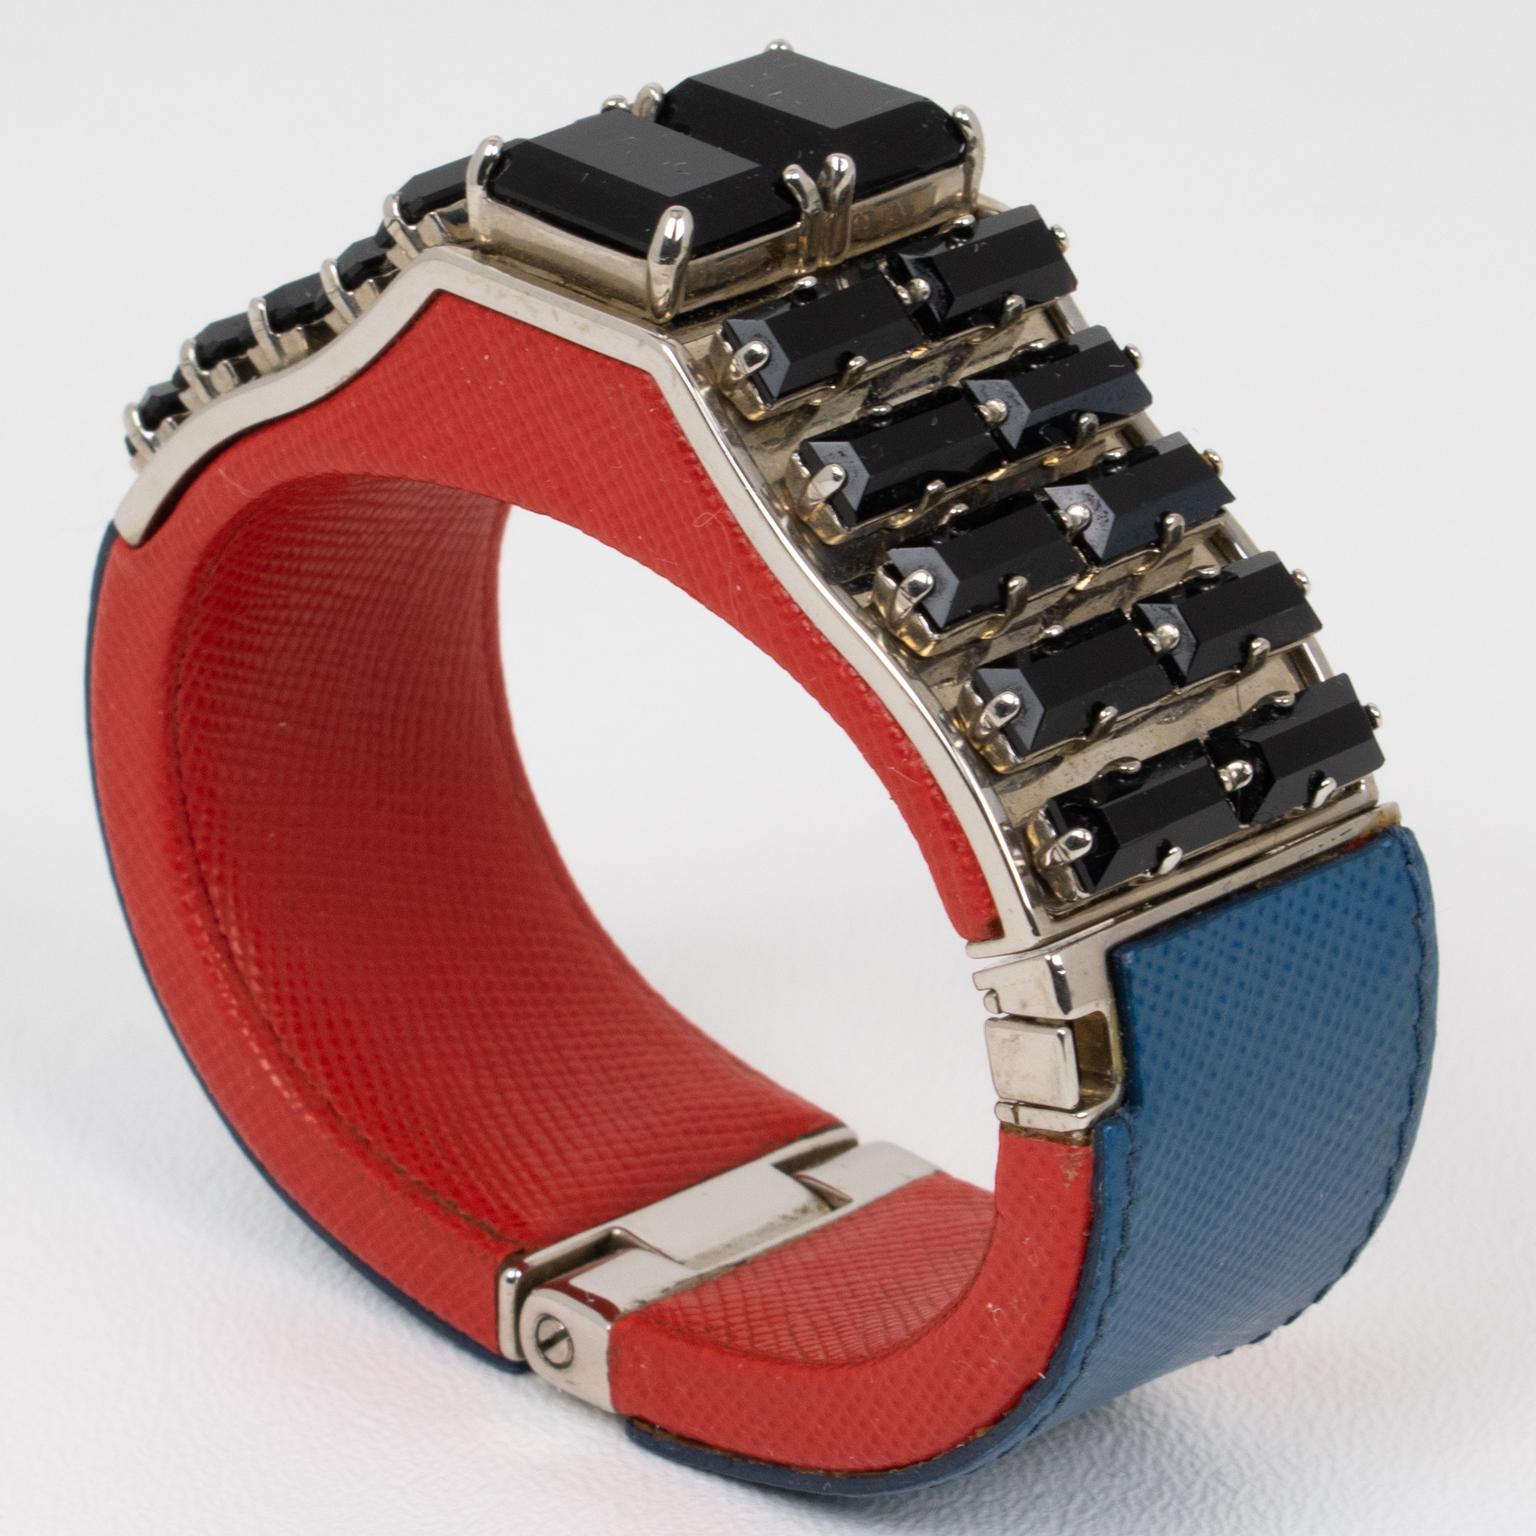 Prada, Italie, a conçu cet extraordinaire bracelet clamper pour ses défilés de prêt-à-porter et de villégiature printemps-été 2014. Cet accessoire saisissant combine l'allure luxueuse du cuir Saffiano bleu et rouge avec les accents mystérieux des